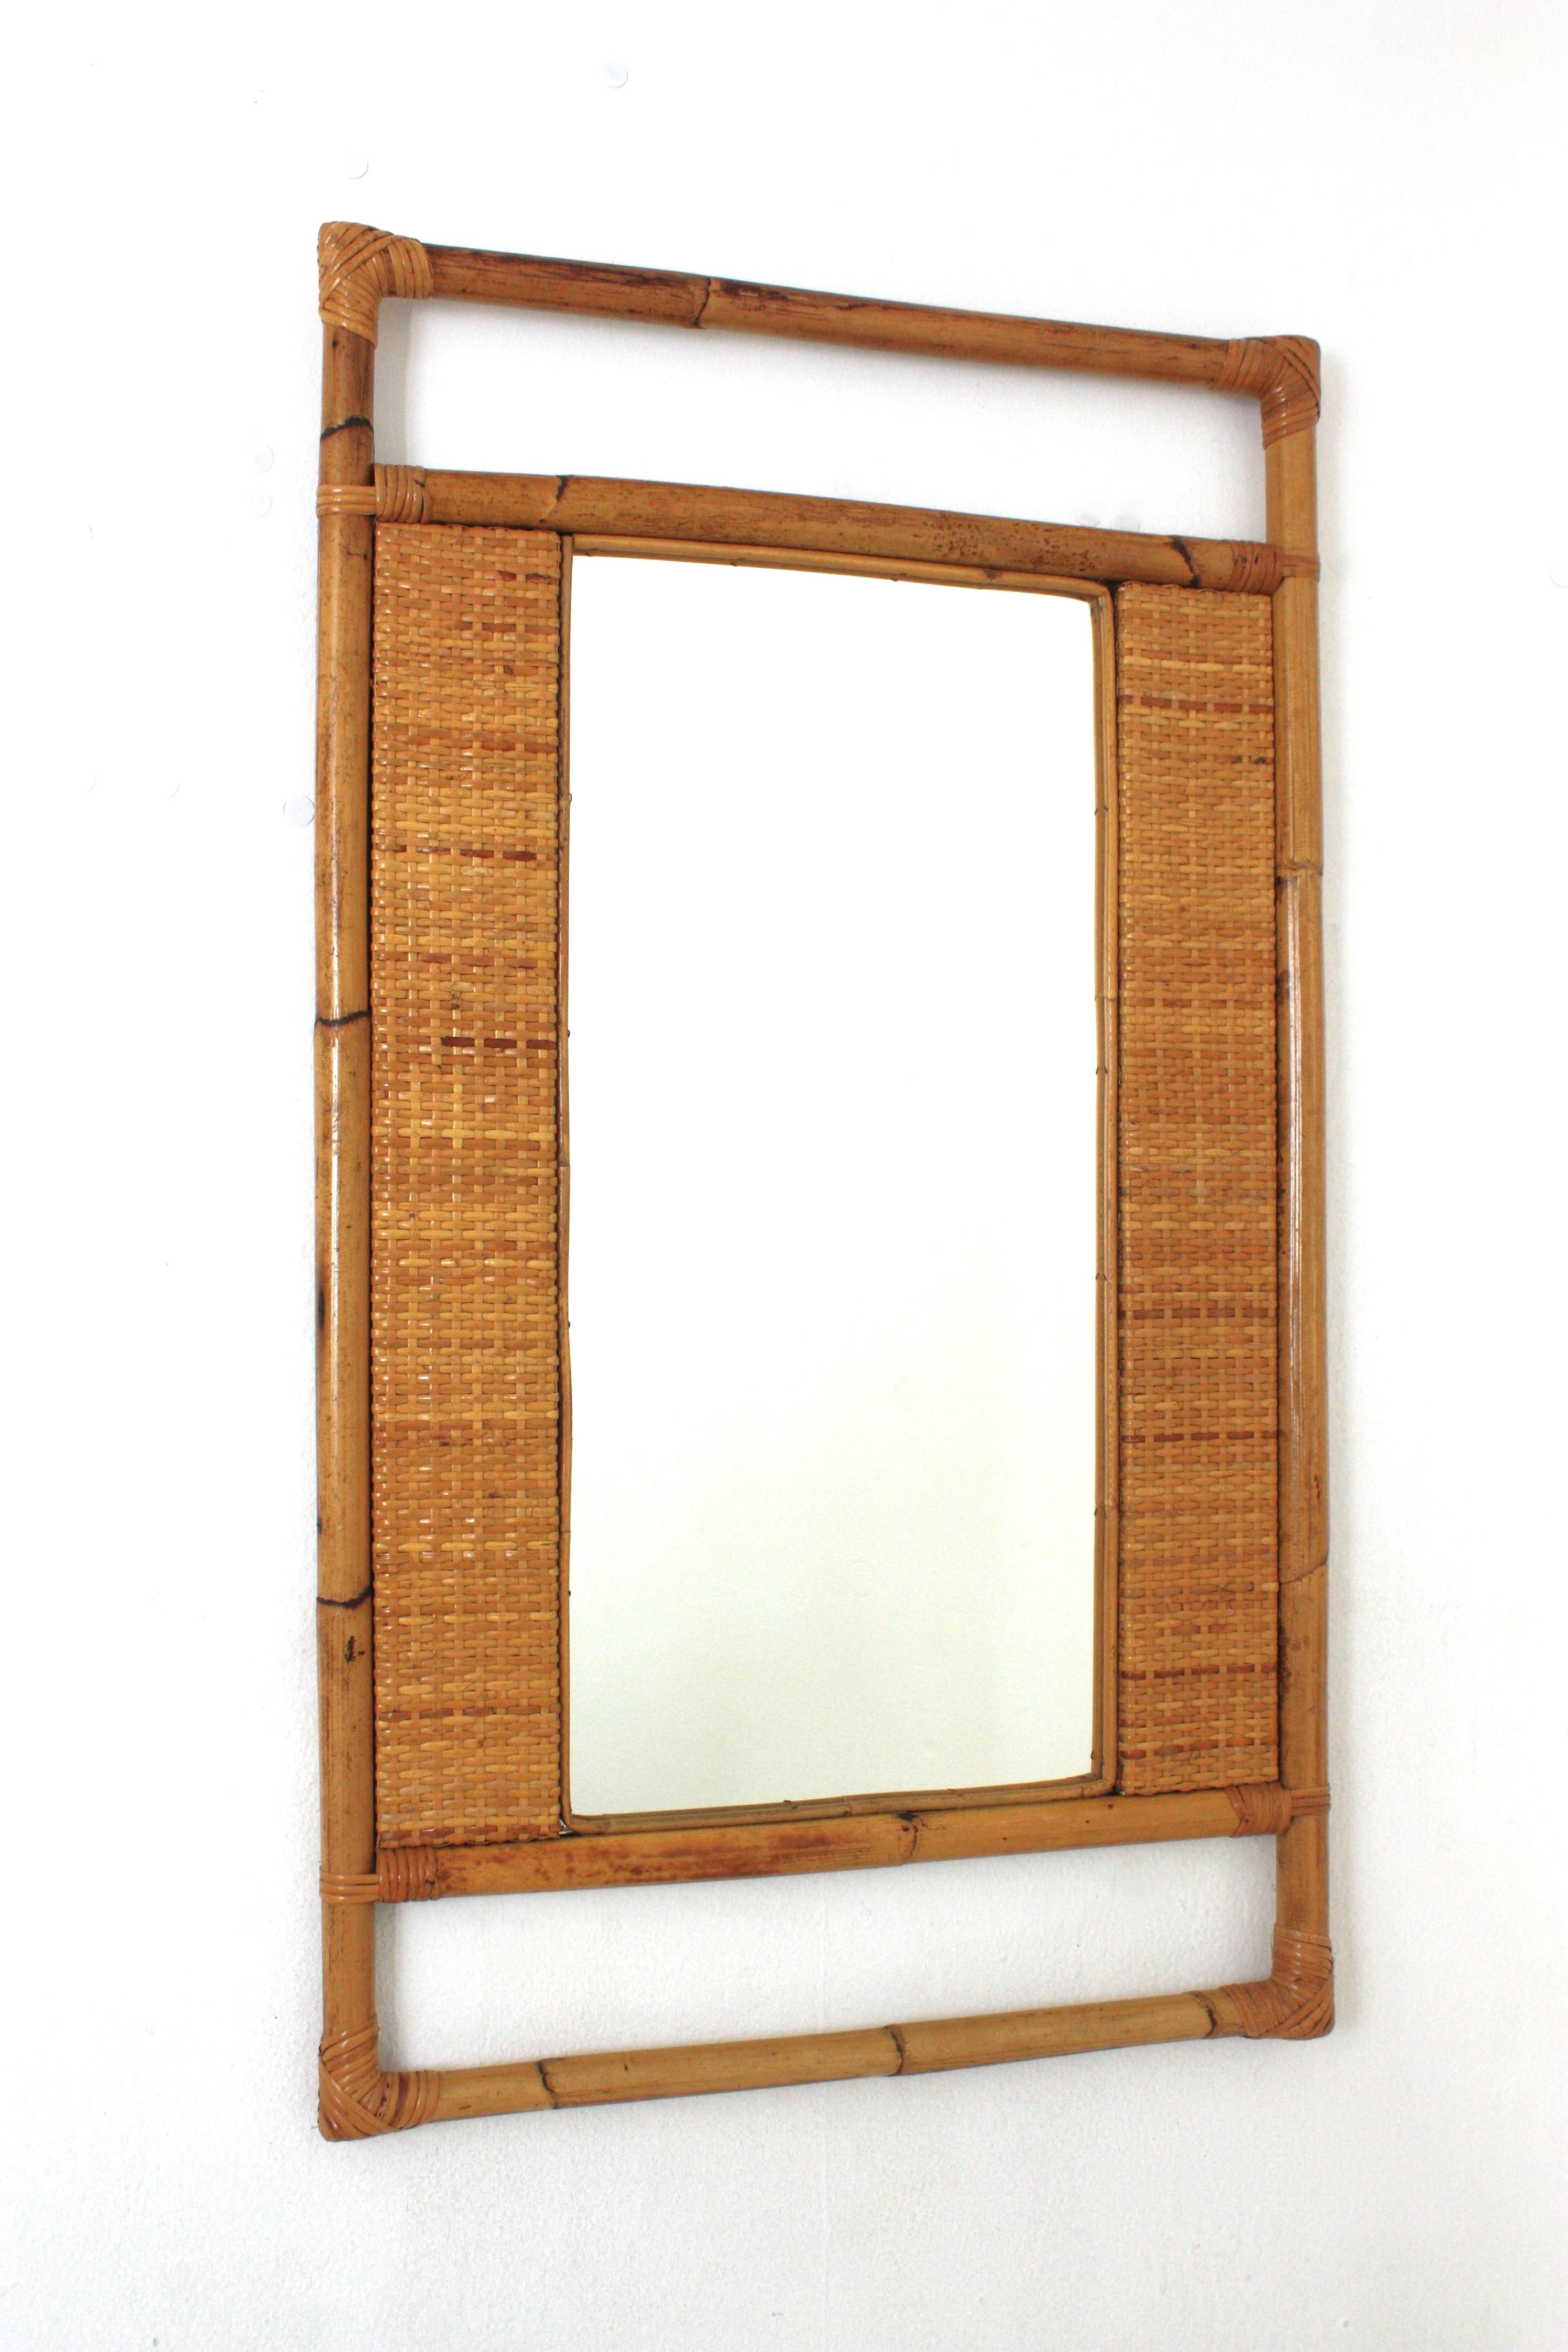 Miroir rectangulaire en rotin de bambou et osier tressé, Espagne, années 1960.
Miroir rectangulaire Coastal accrocheur, cadre en bambou rotin et panneaux en osier tressé fabriqués à la main. 
Cadre en rotin hautement décoratif fabriqué à la main